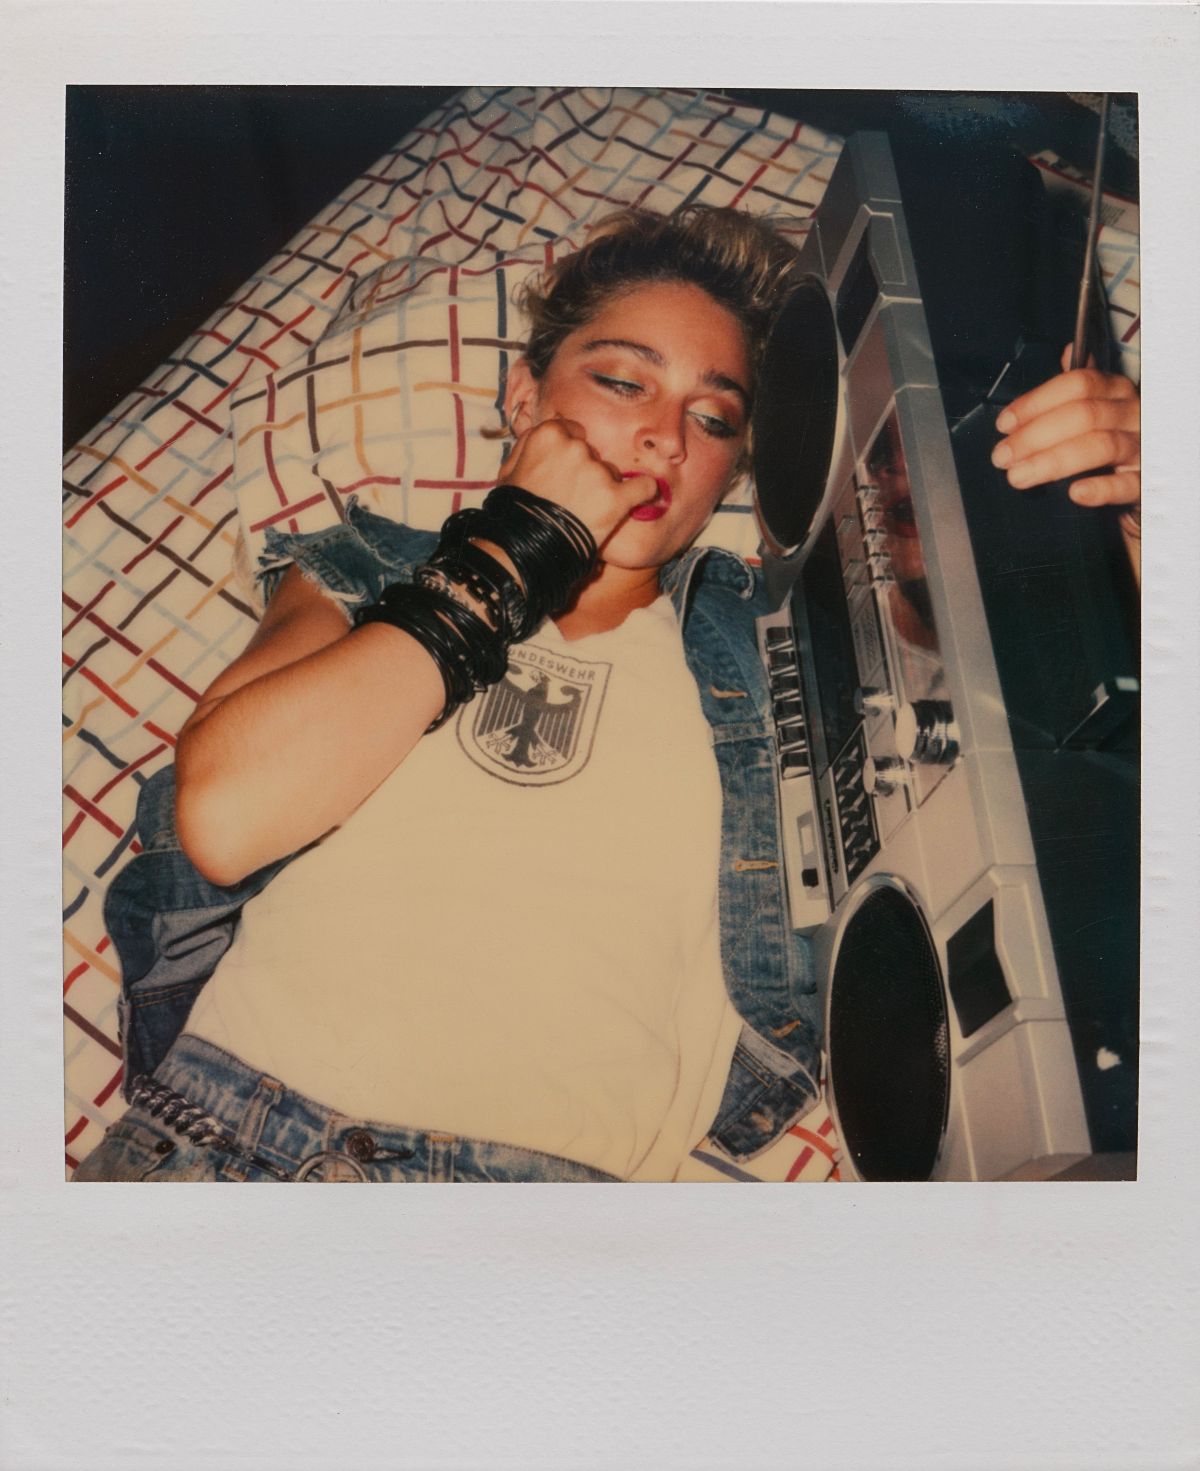 Мадонна на пороге славы в полароидных фотографиях 1983 года Ричарда Кормана 1